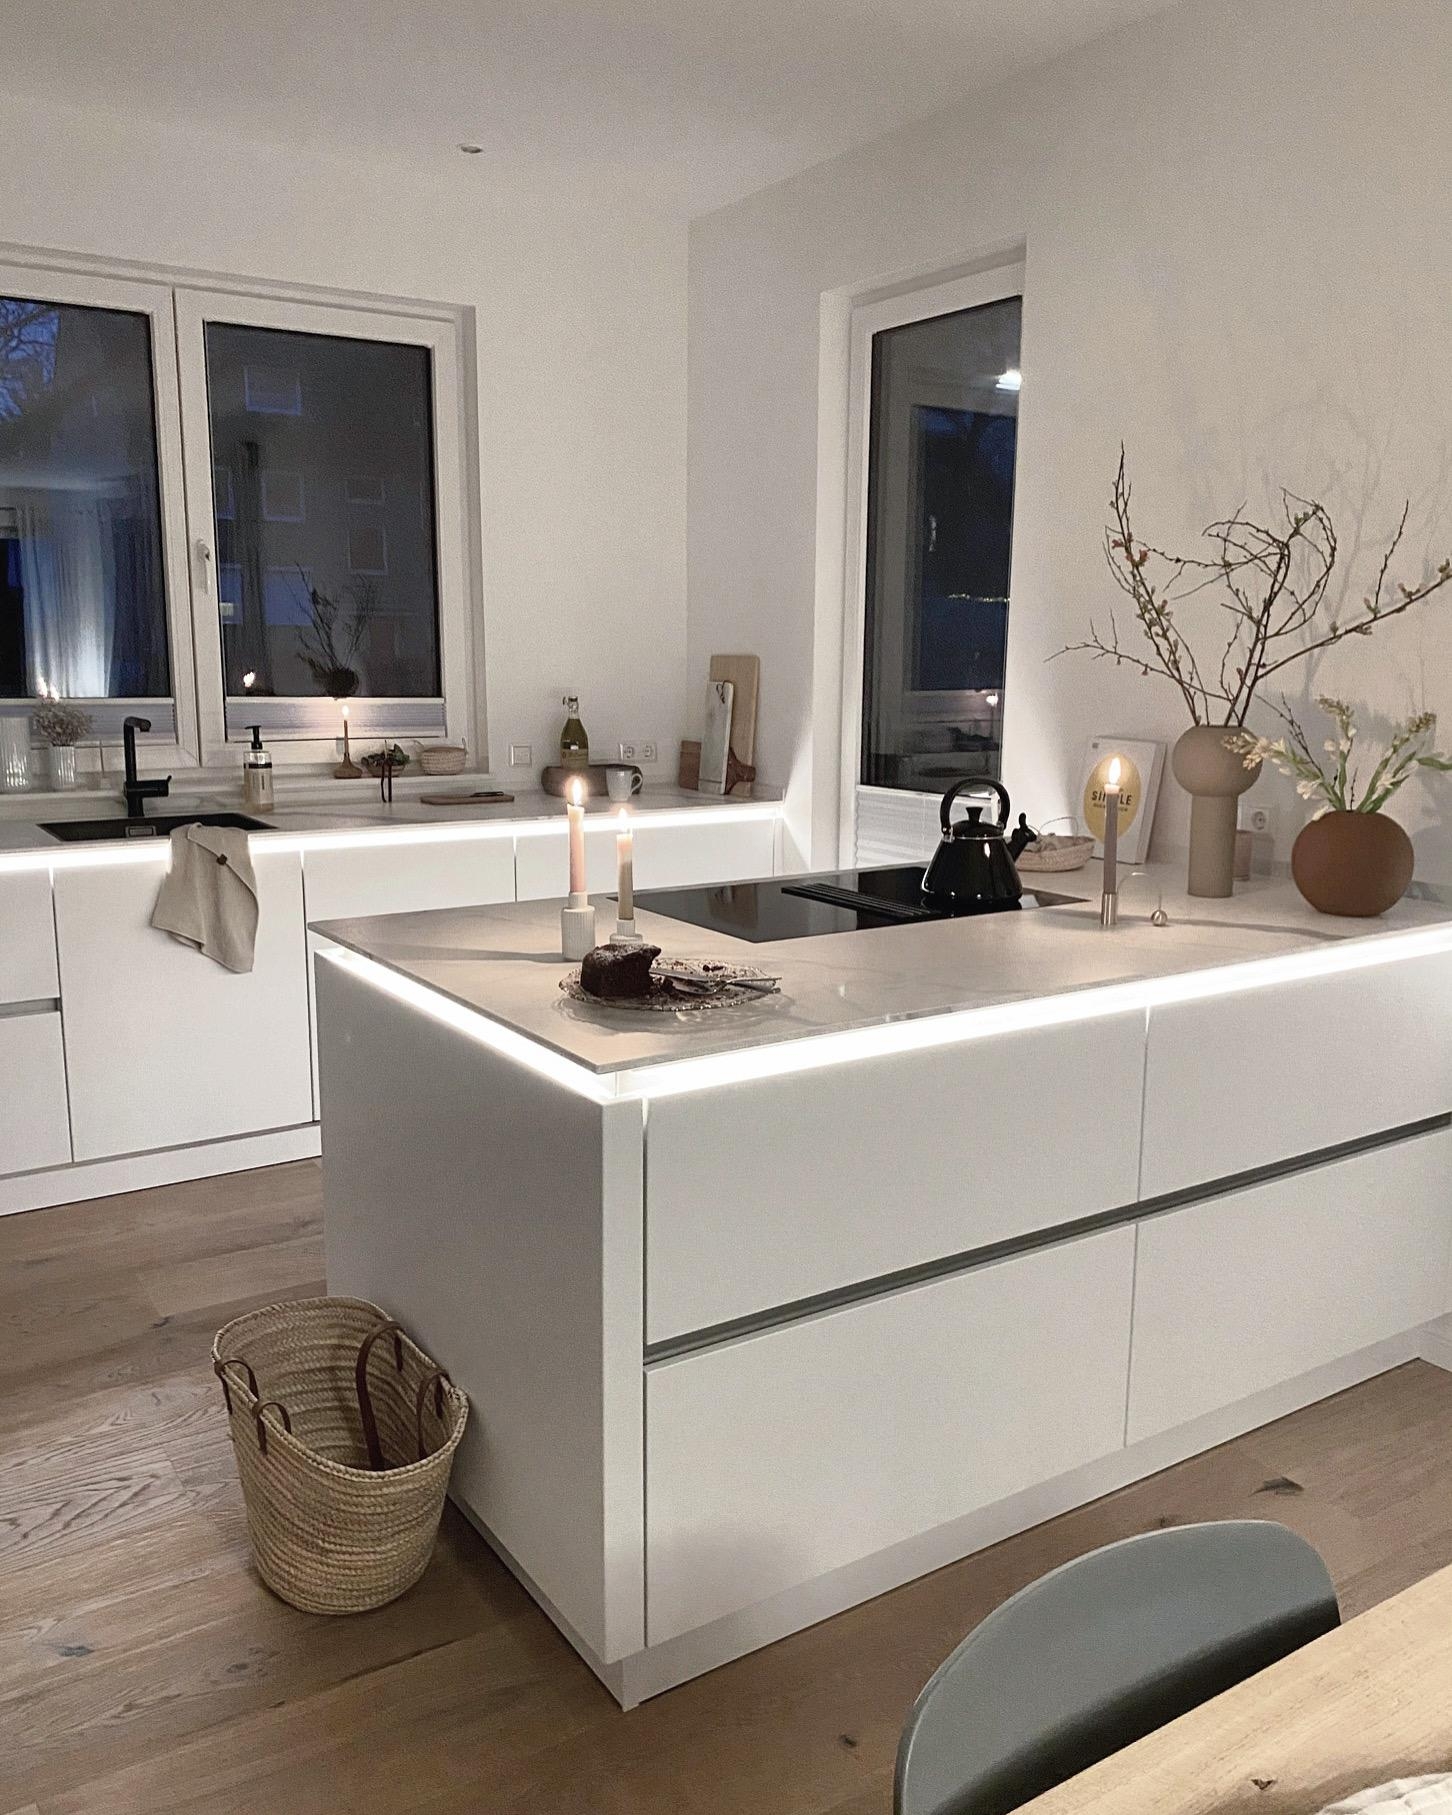 Hi, from my kitchen 🤎
#küche#weisseküche#whitekitchen#interior#couchliebt#hygge#cozy